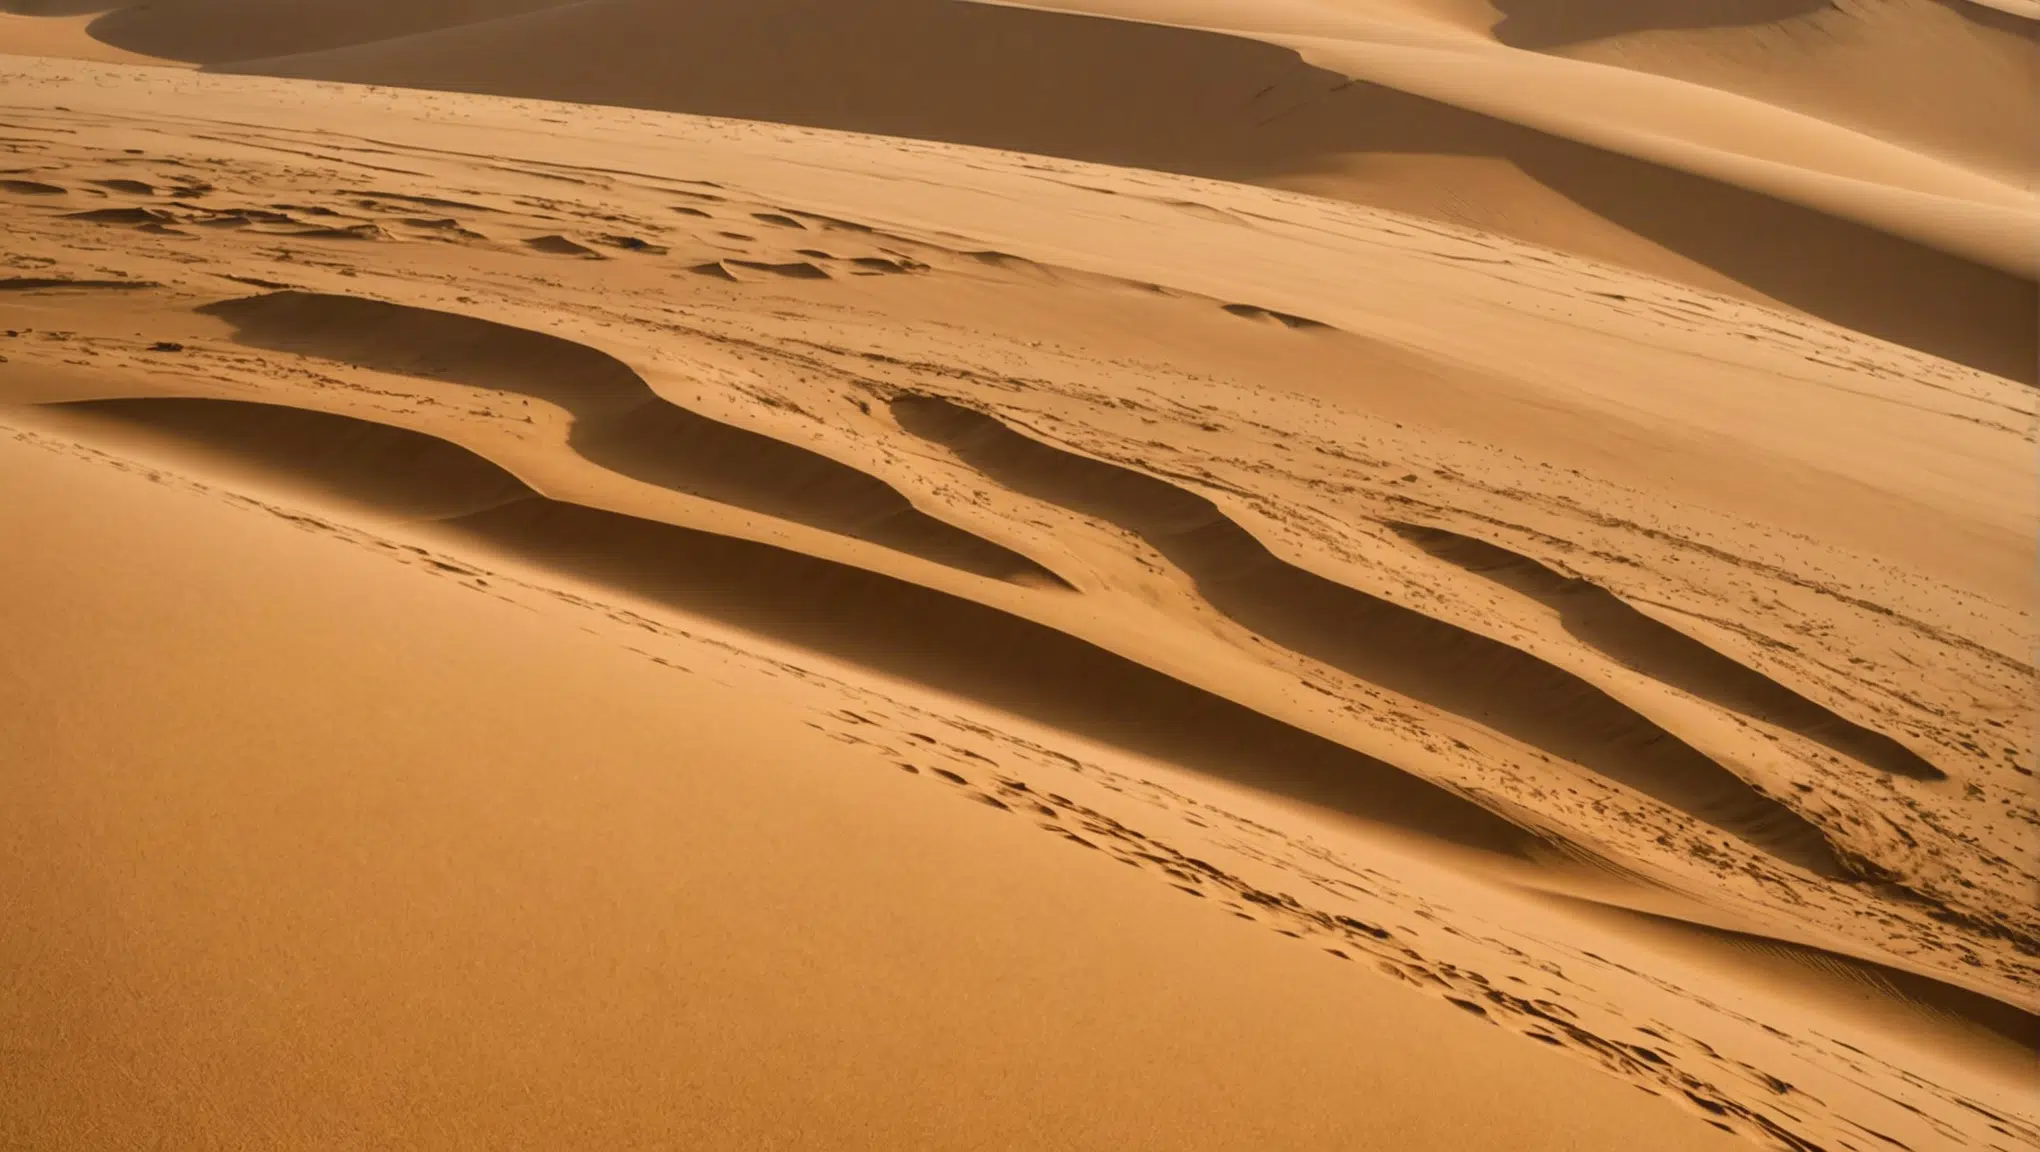 découvrez le fascinant sable du sahara en france et explorez 5 endroits surprenants où son impact vous surprendra ce week-end !